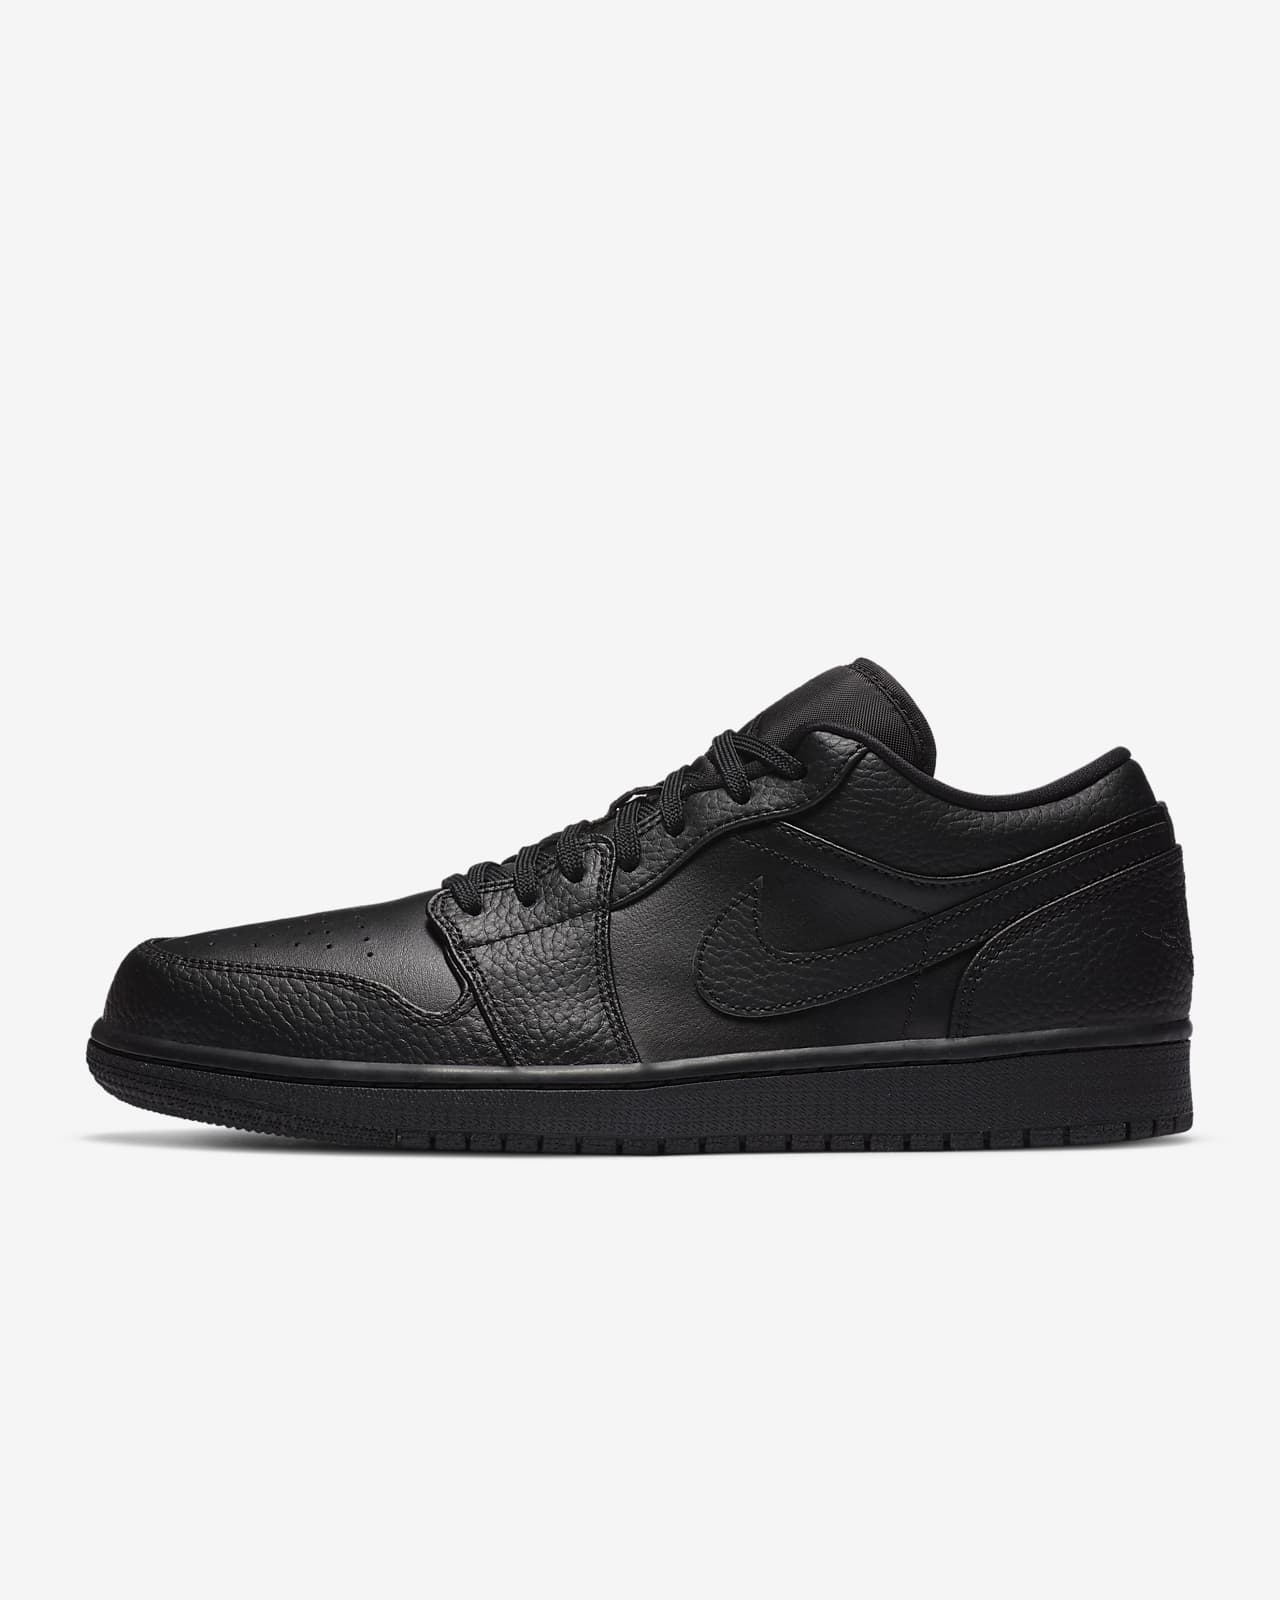 Air Jordan 1 Low Shoe. Nike NL